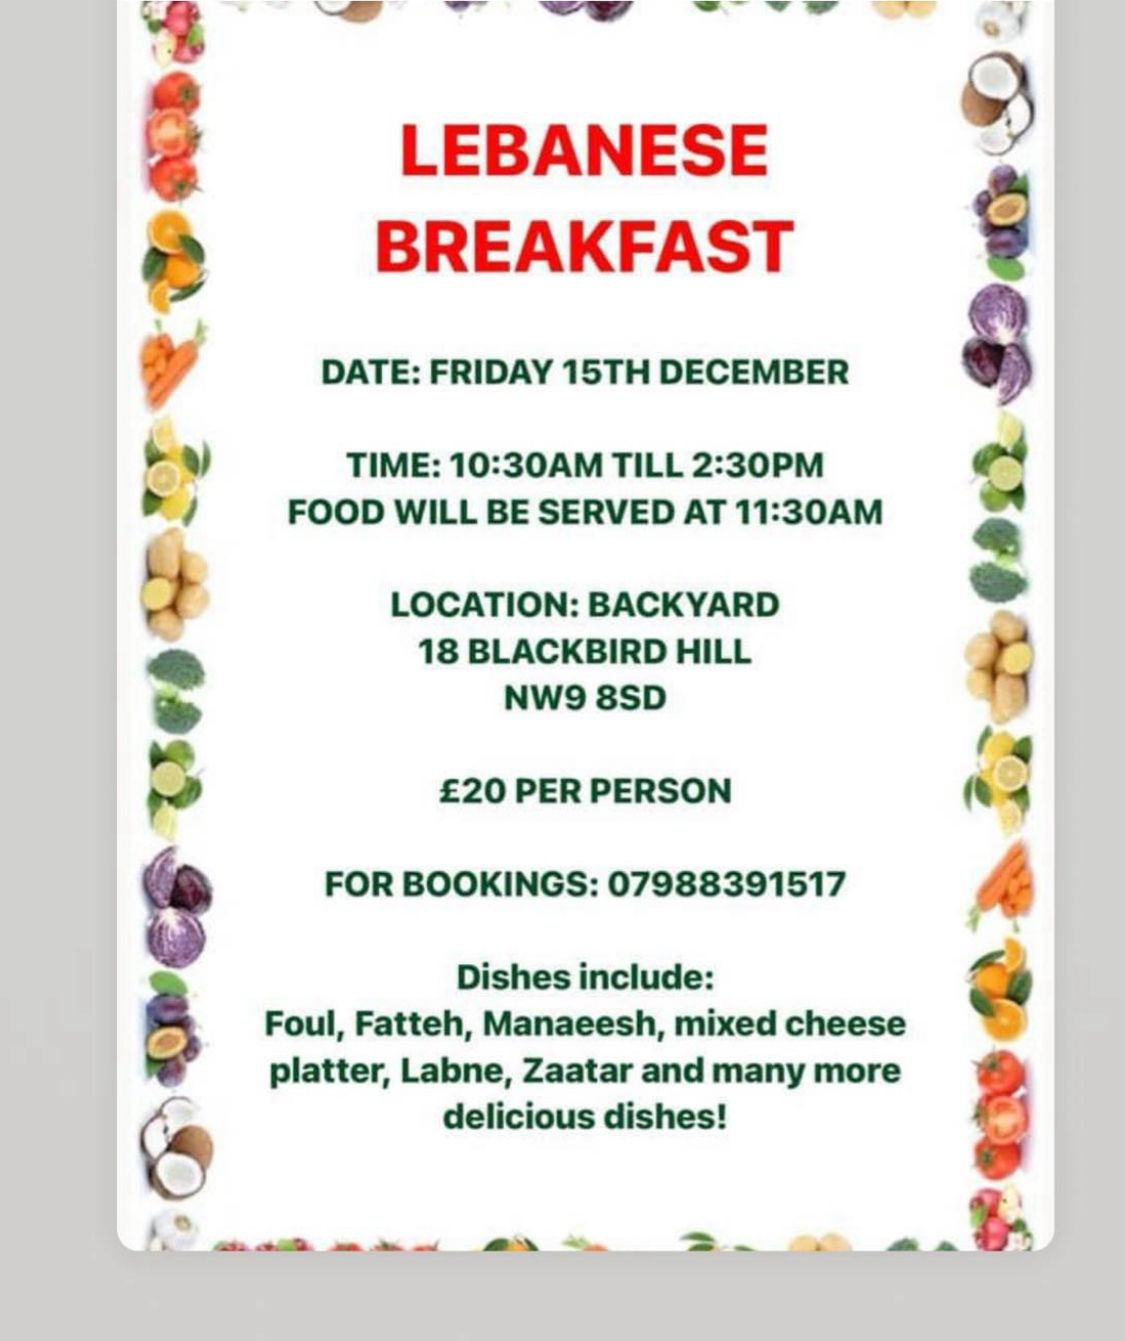 فطور لبناني في لندن